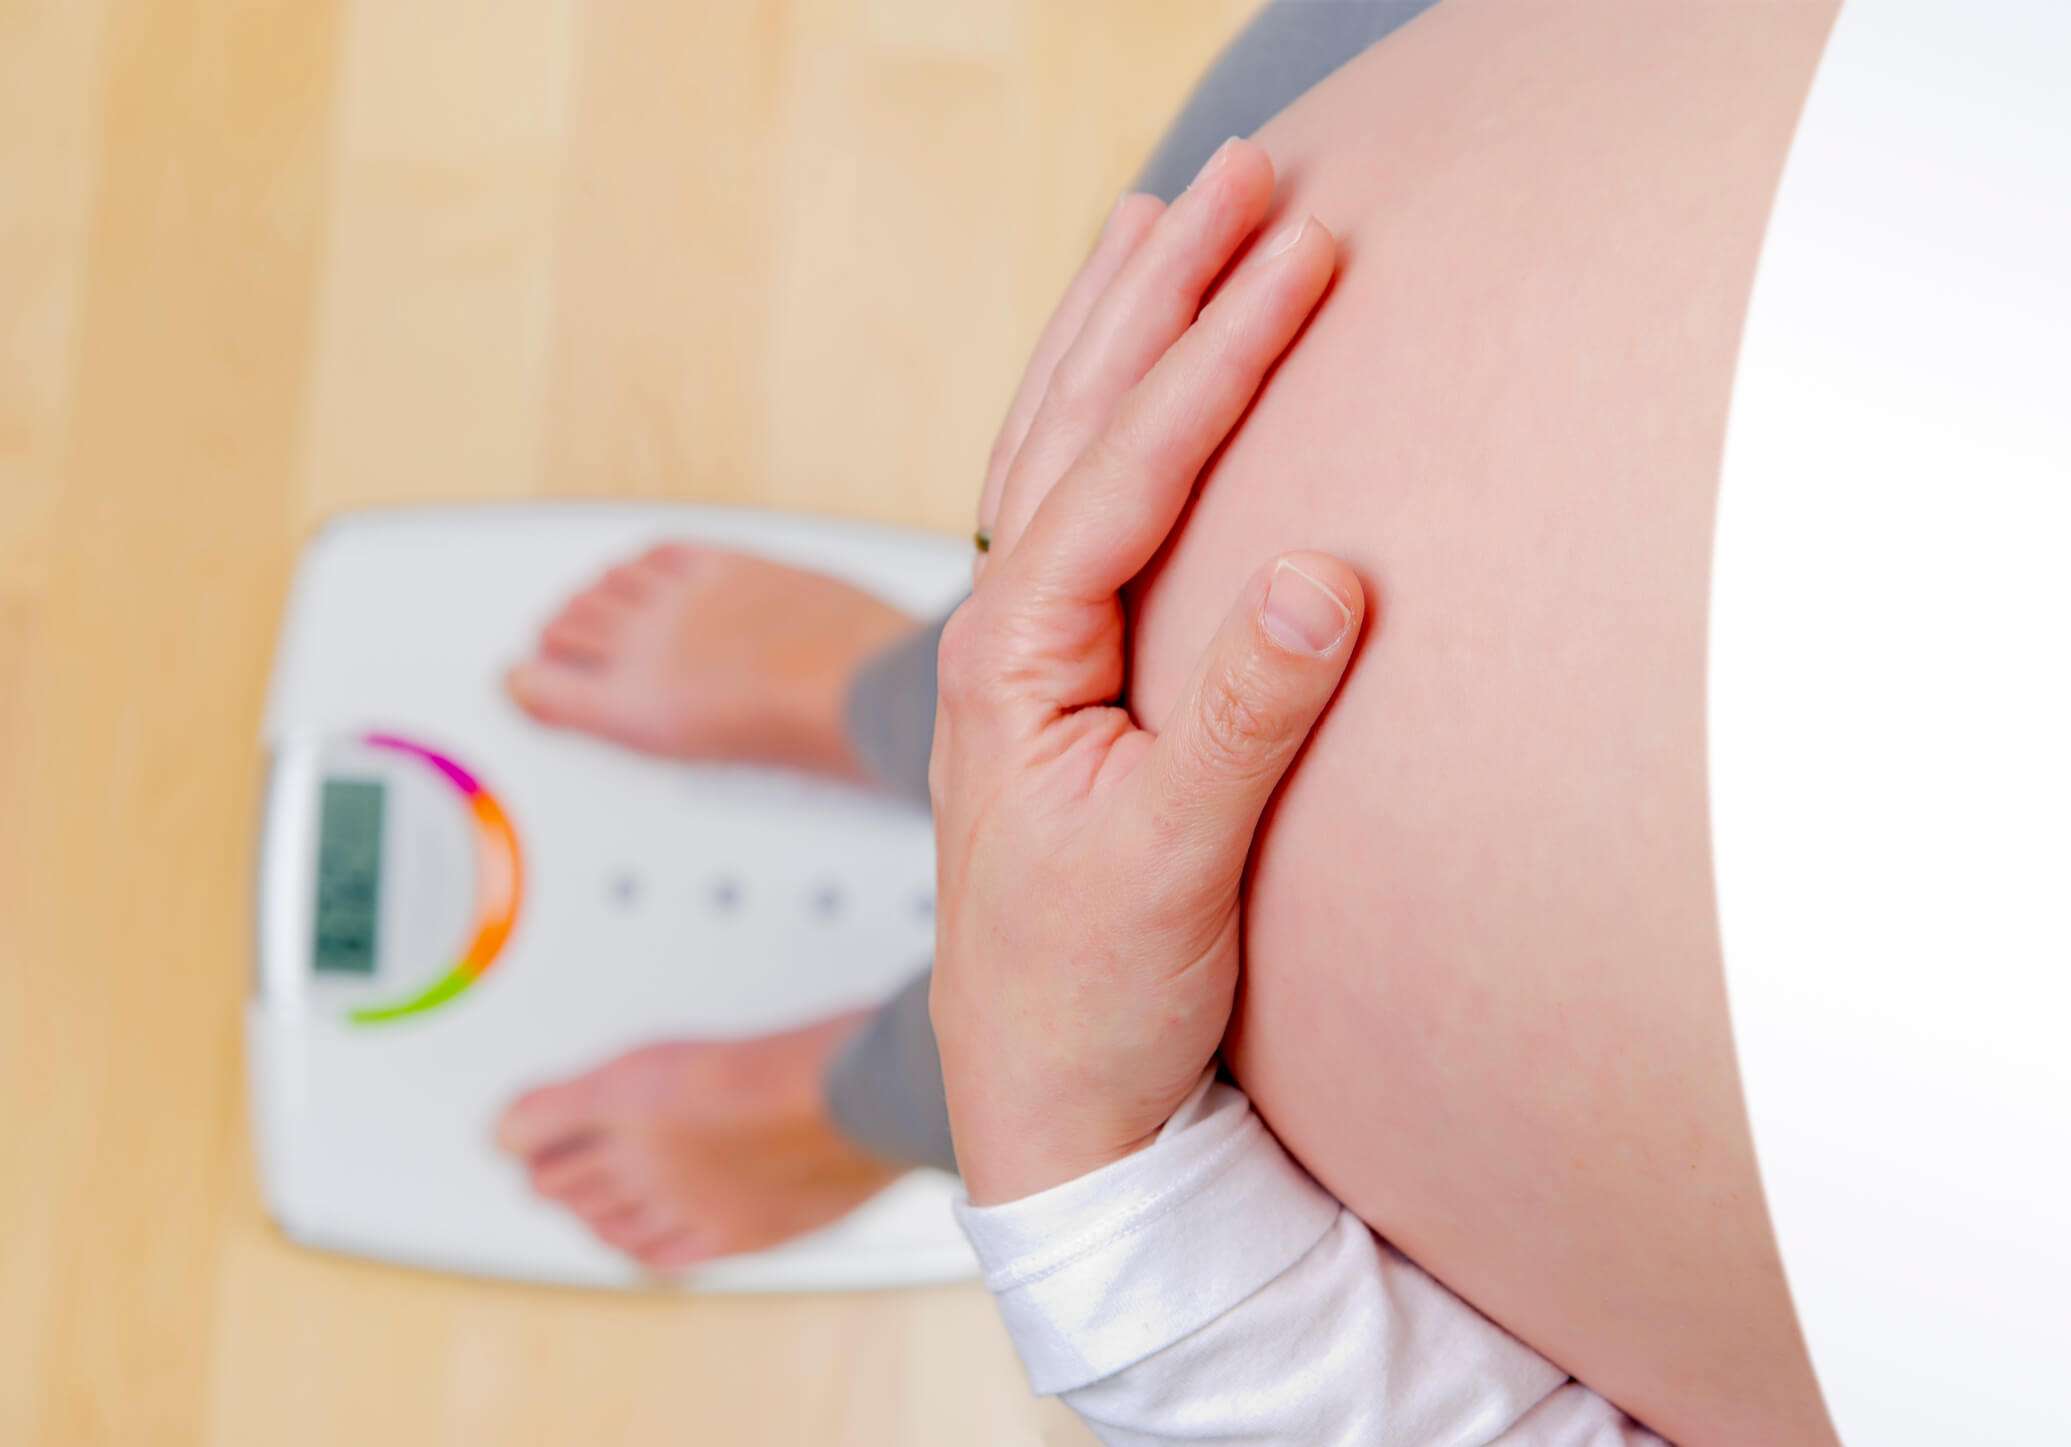 Obesidade está associada à infertilidade feminina? Descubra aqui!